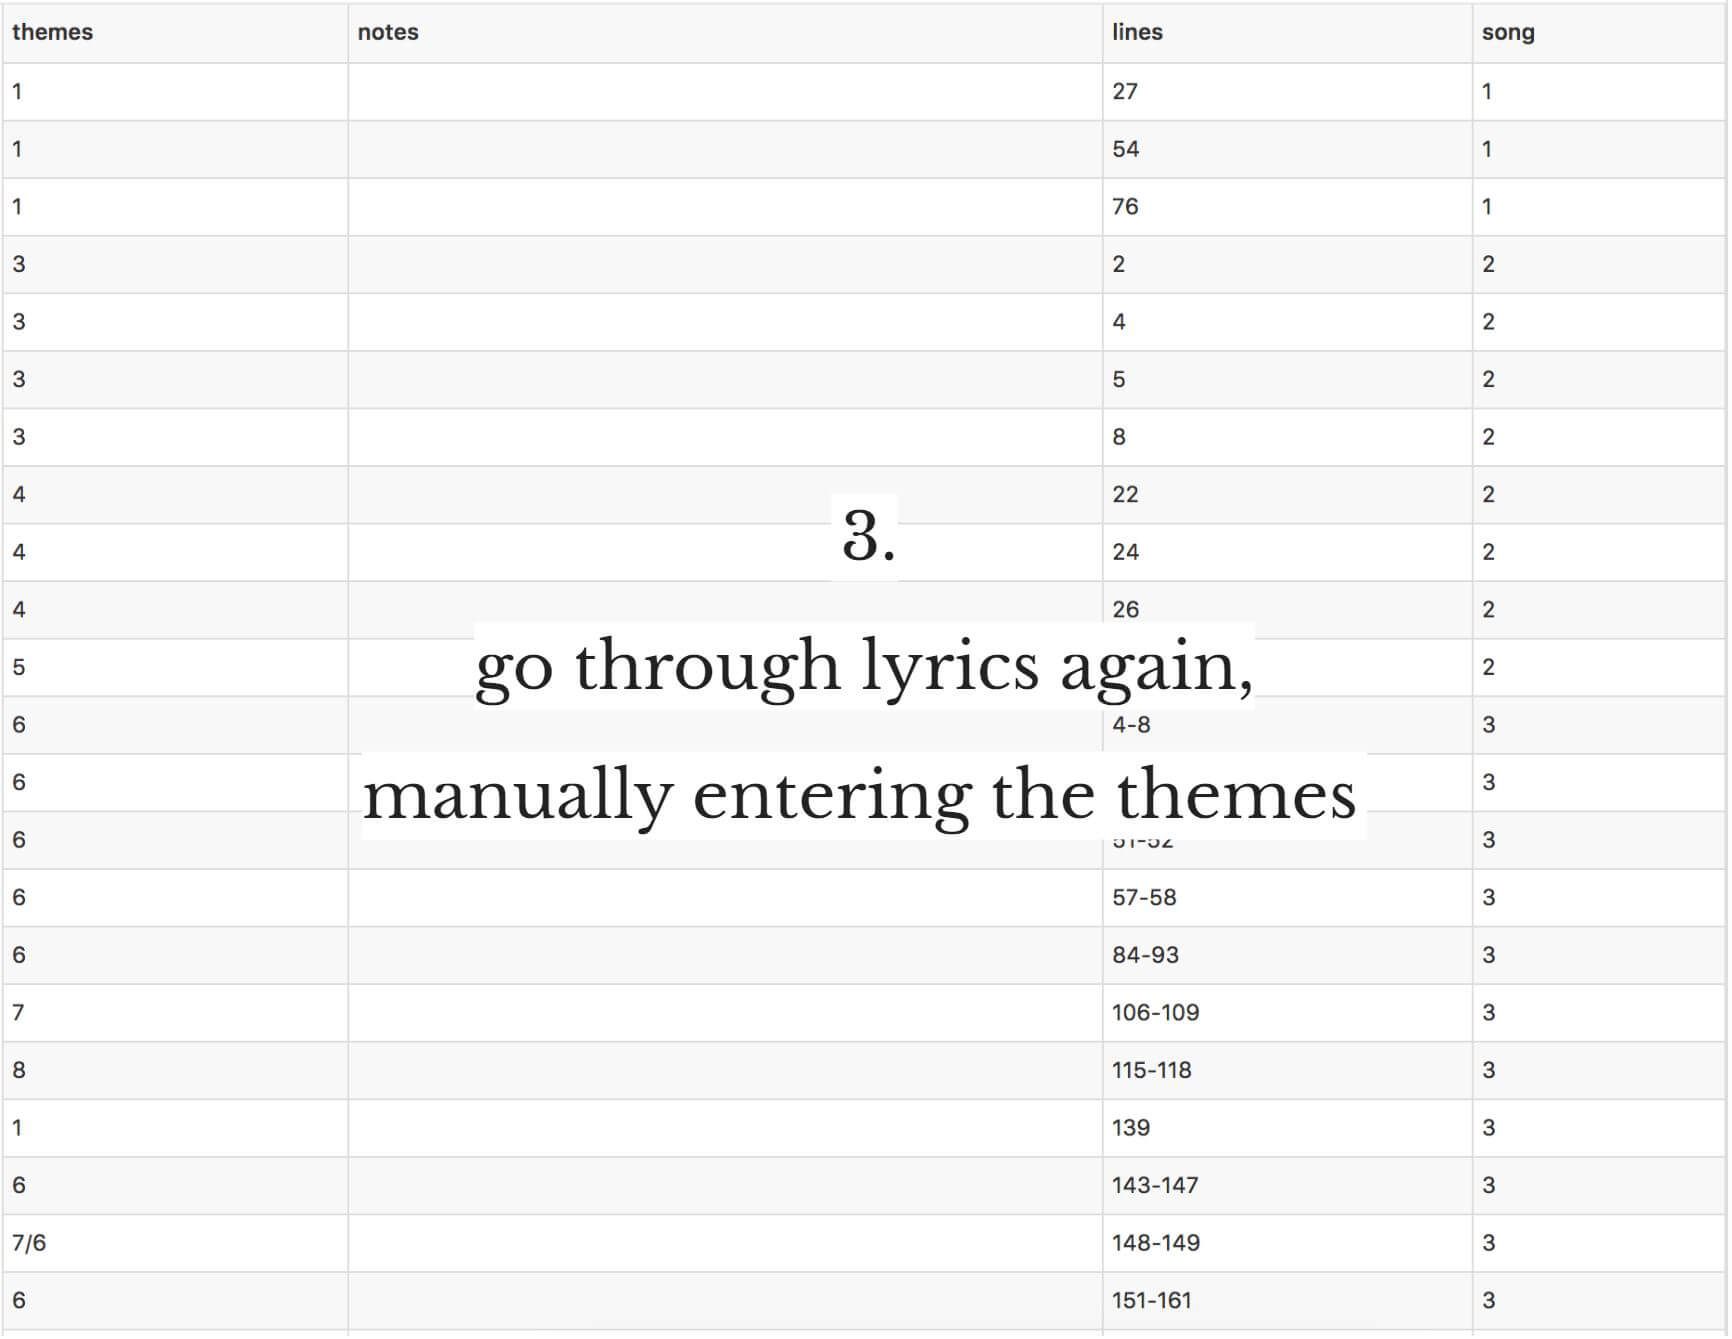 3.Go through lyrics again, manually entering the themes